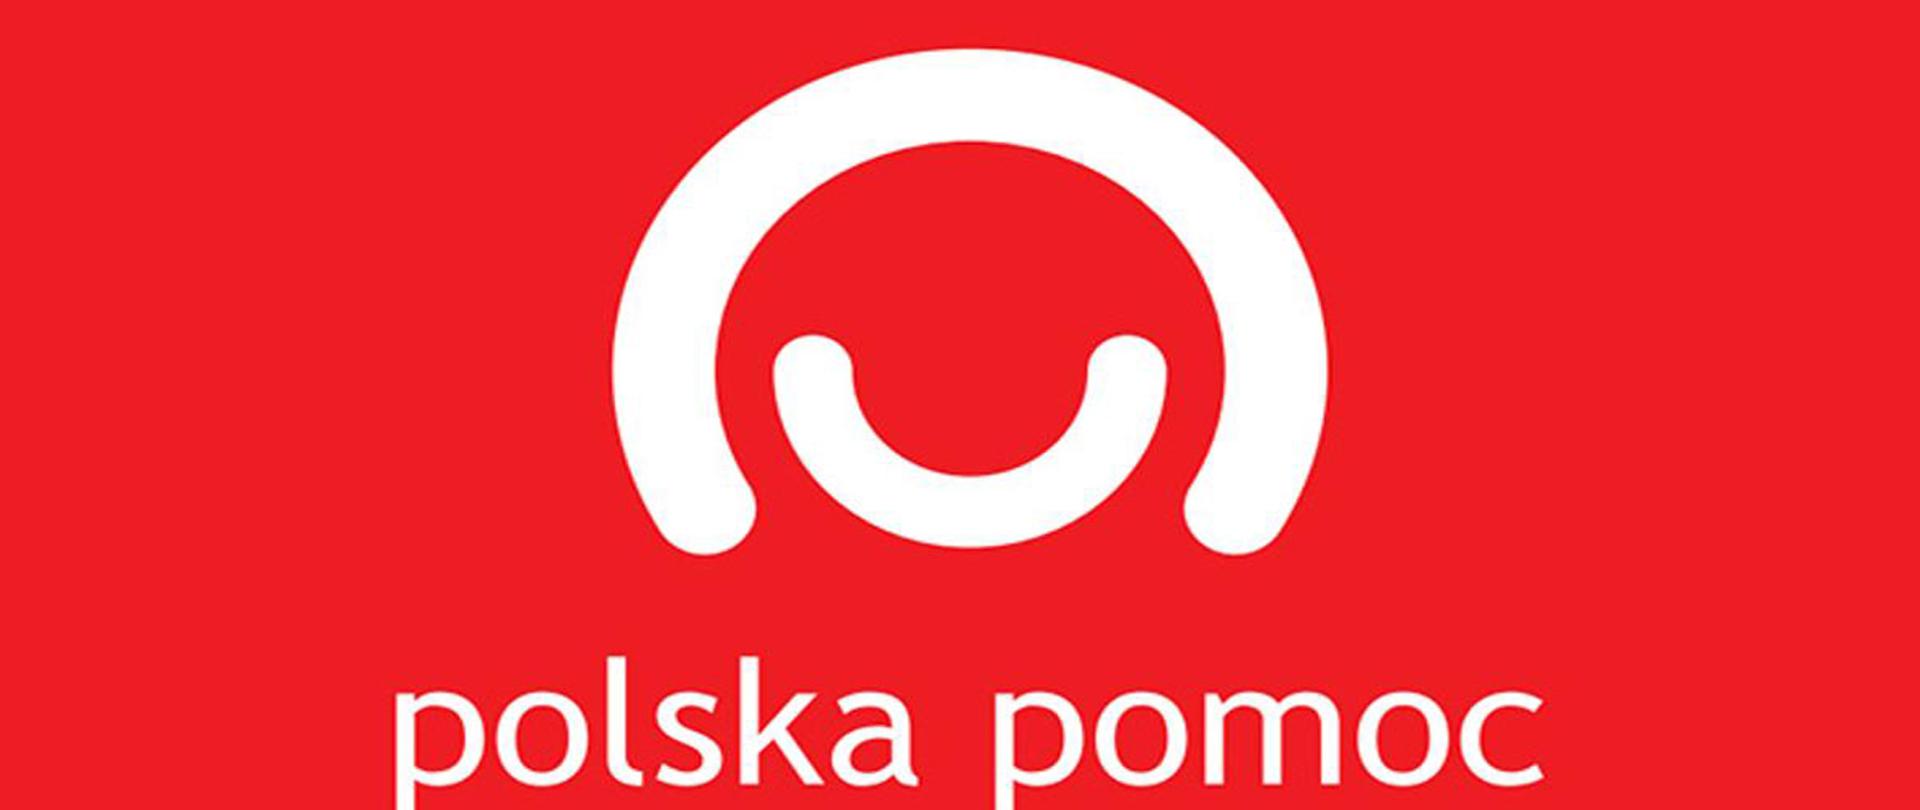 Na czerwonym tle dwa półkola w kolorze białymo różnej wielkości tworzące uśmiechniętą postać praz napis polska pomoc pod spodem